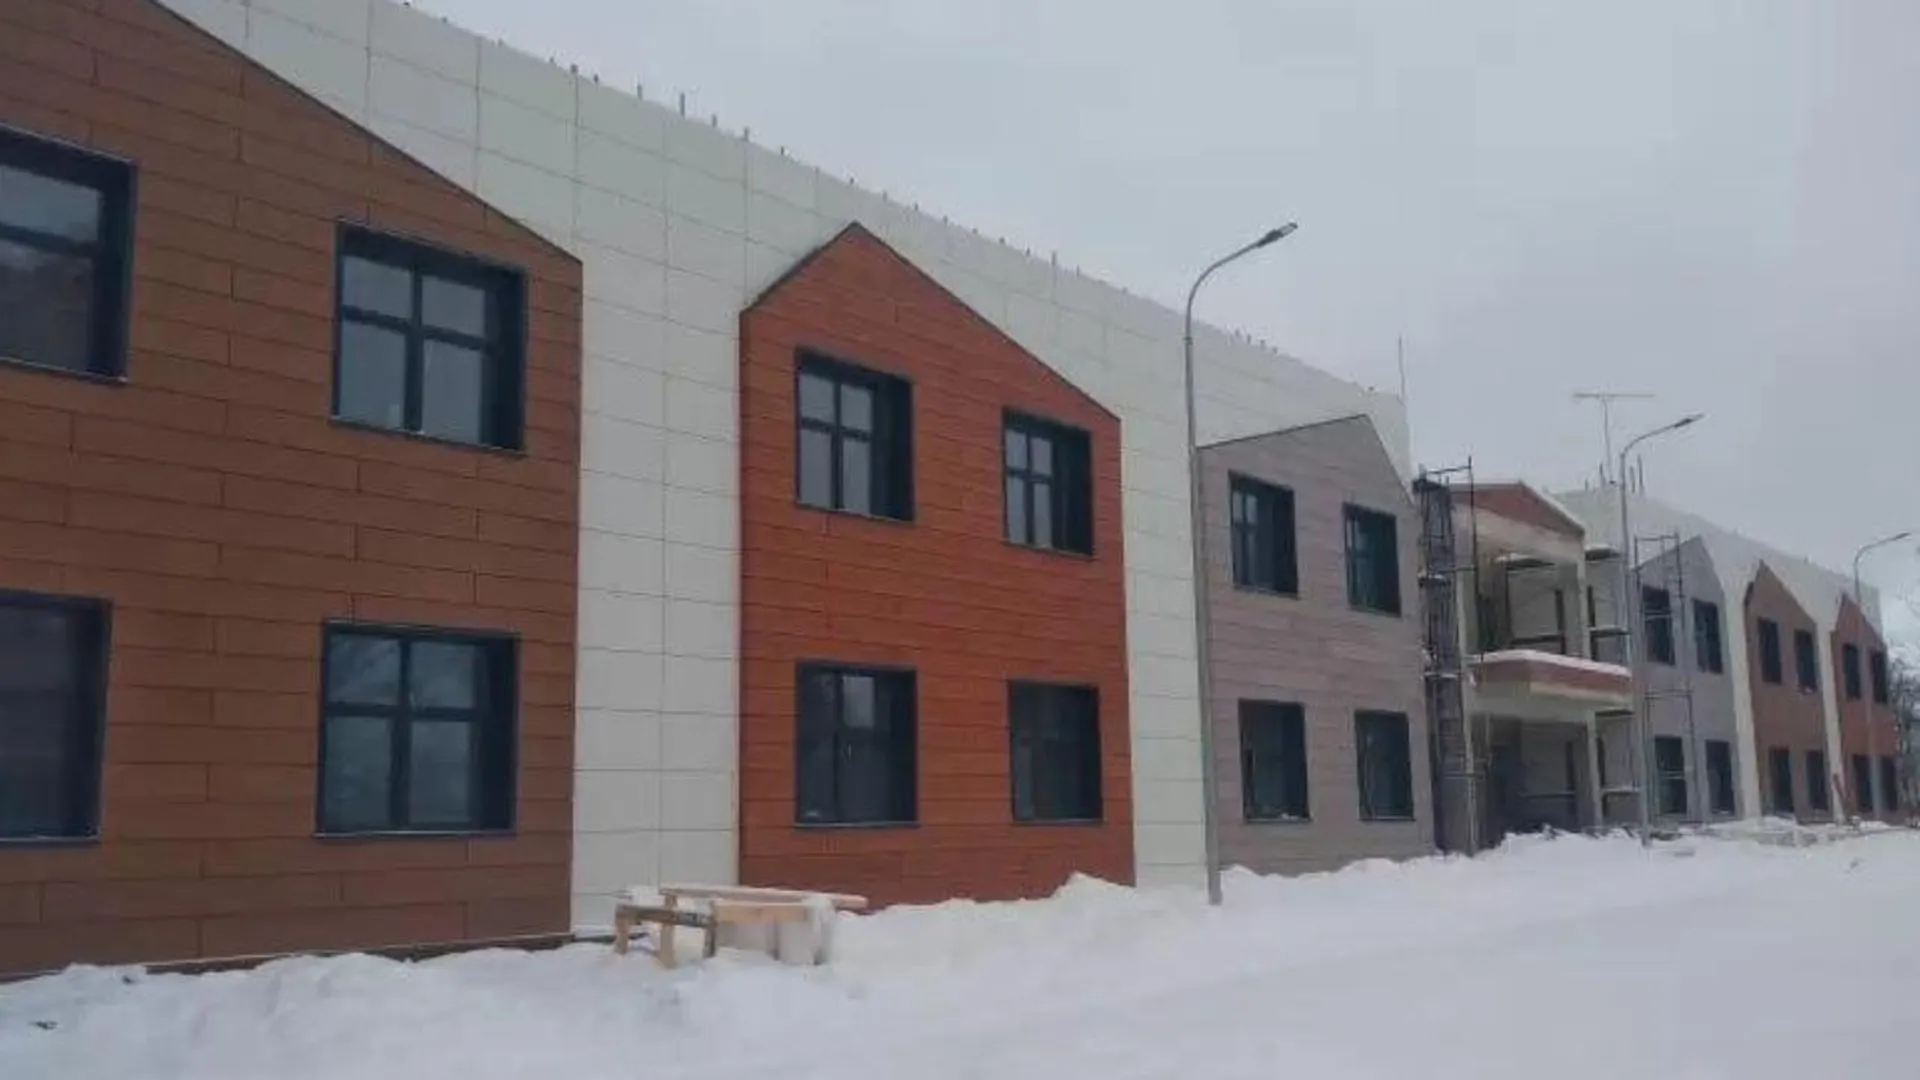 Строительство нового детского сада завершается в микрорайоне Климовск в Подольске